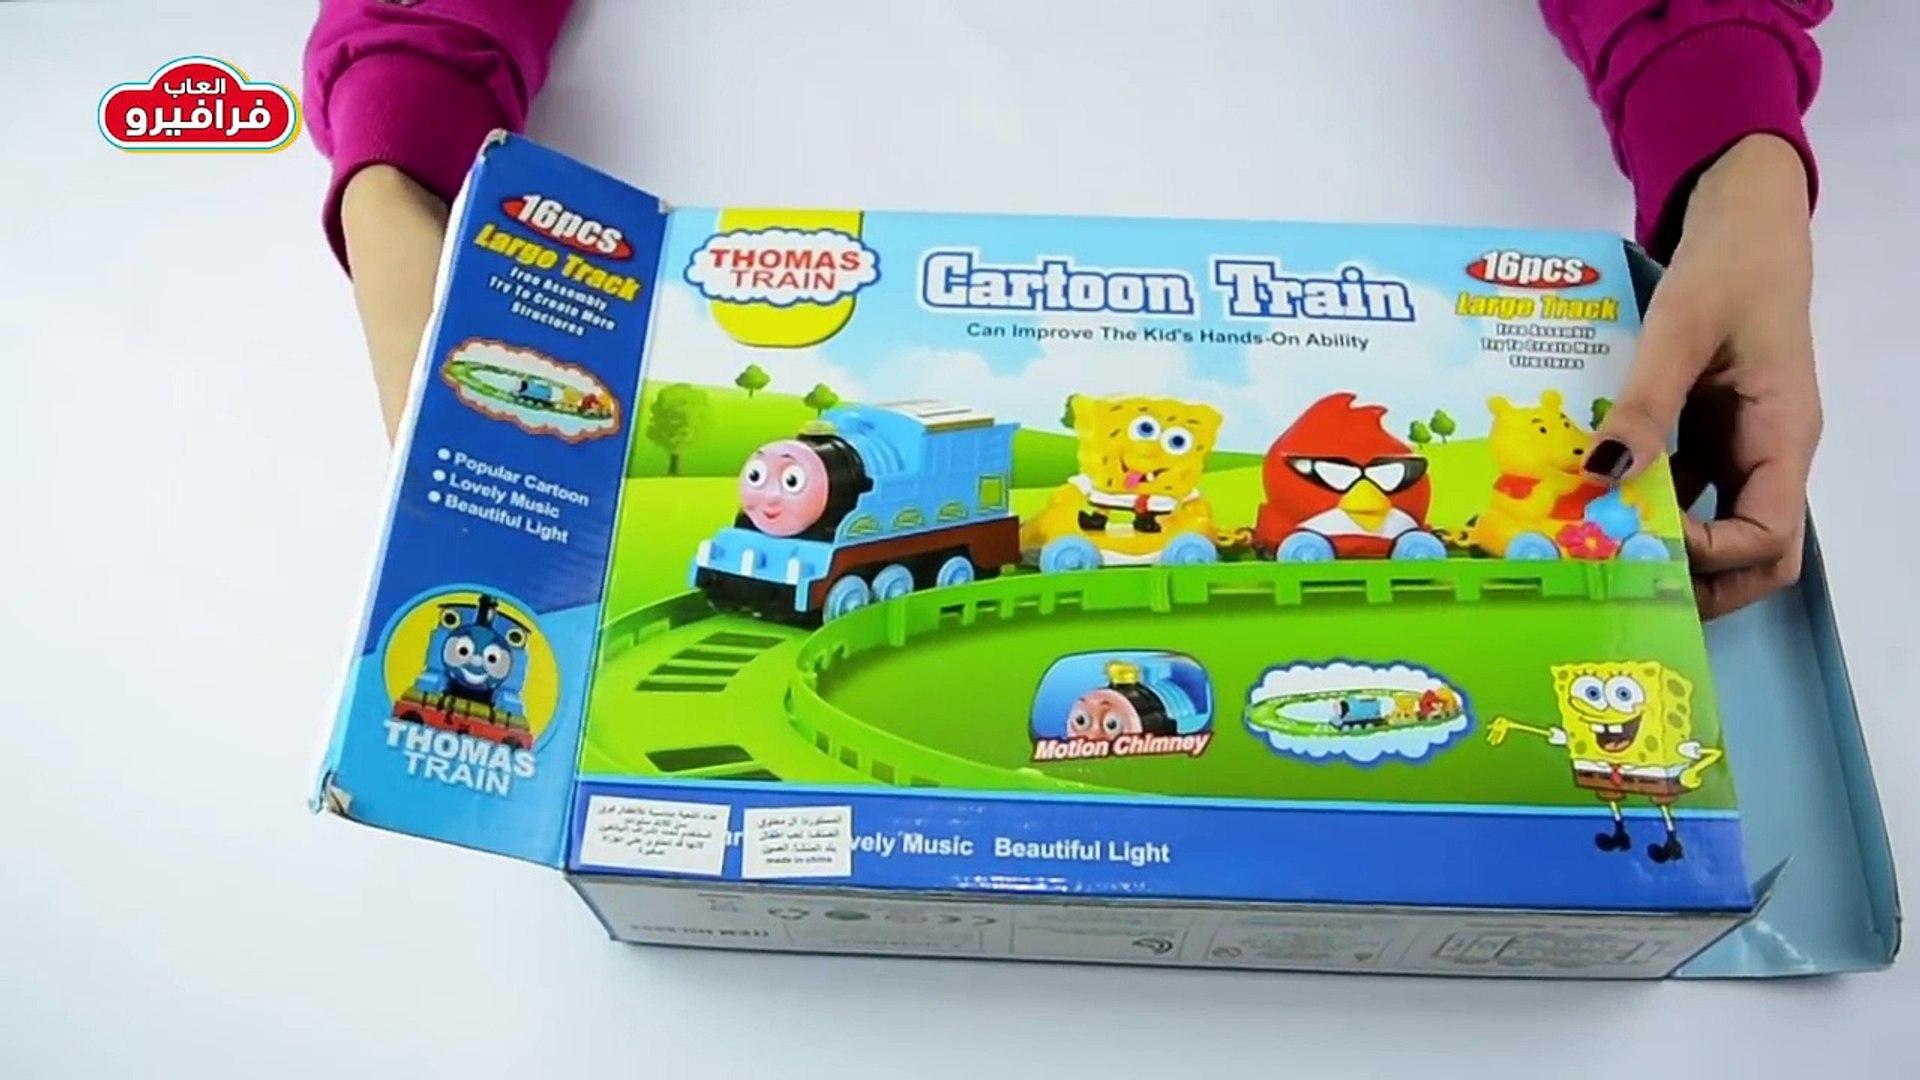 ألعاب بنات واولاد و لعبة القطار توماس و سبونج بوب - العاب اطفال 3 سنوات  قطارات - video Dailymotion